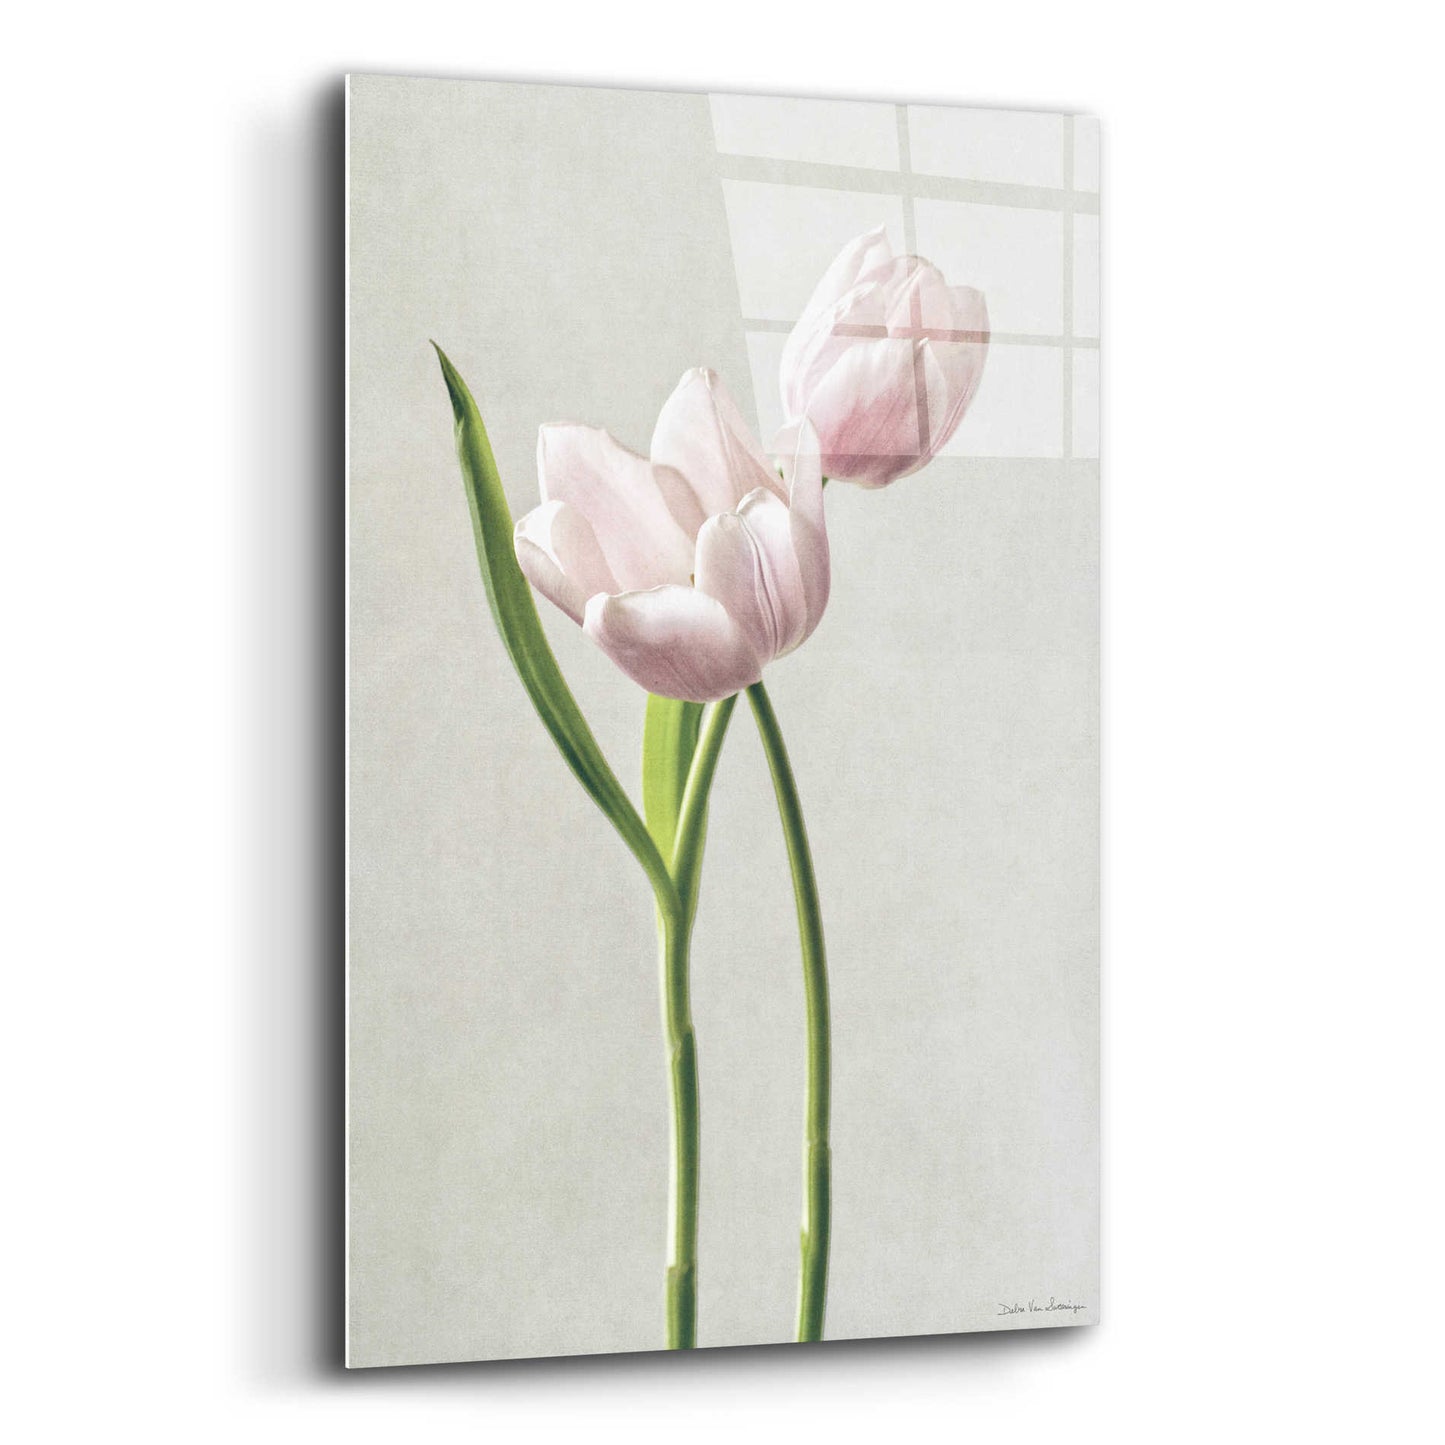 Epic Art 'Light Tulips III' by Debra Van Swearingen, Acrylic Glass Wall Art,16x24